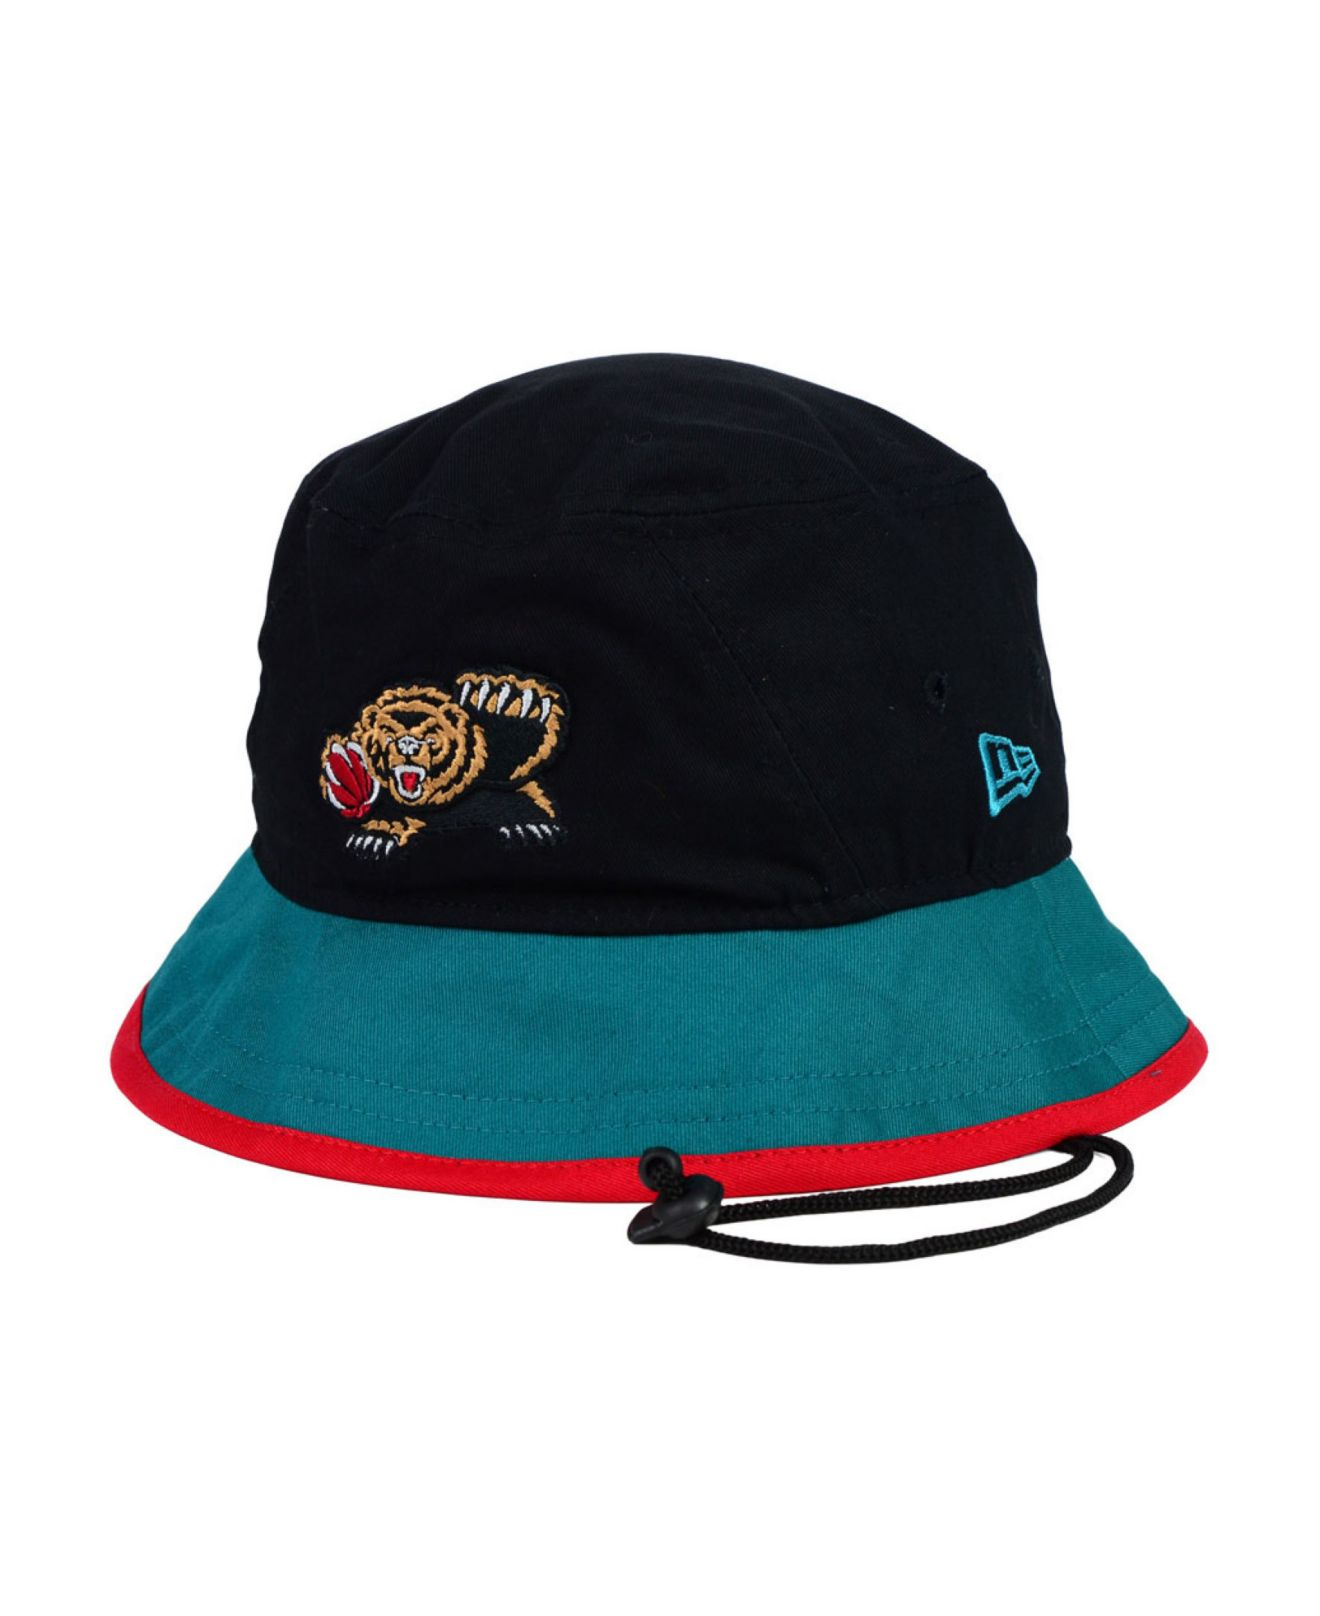 KTZ Vancouver Grizzlies Black-Top Bucket Hat for Men - Lyst